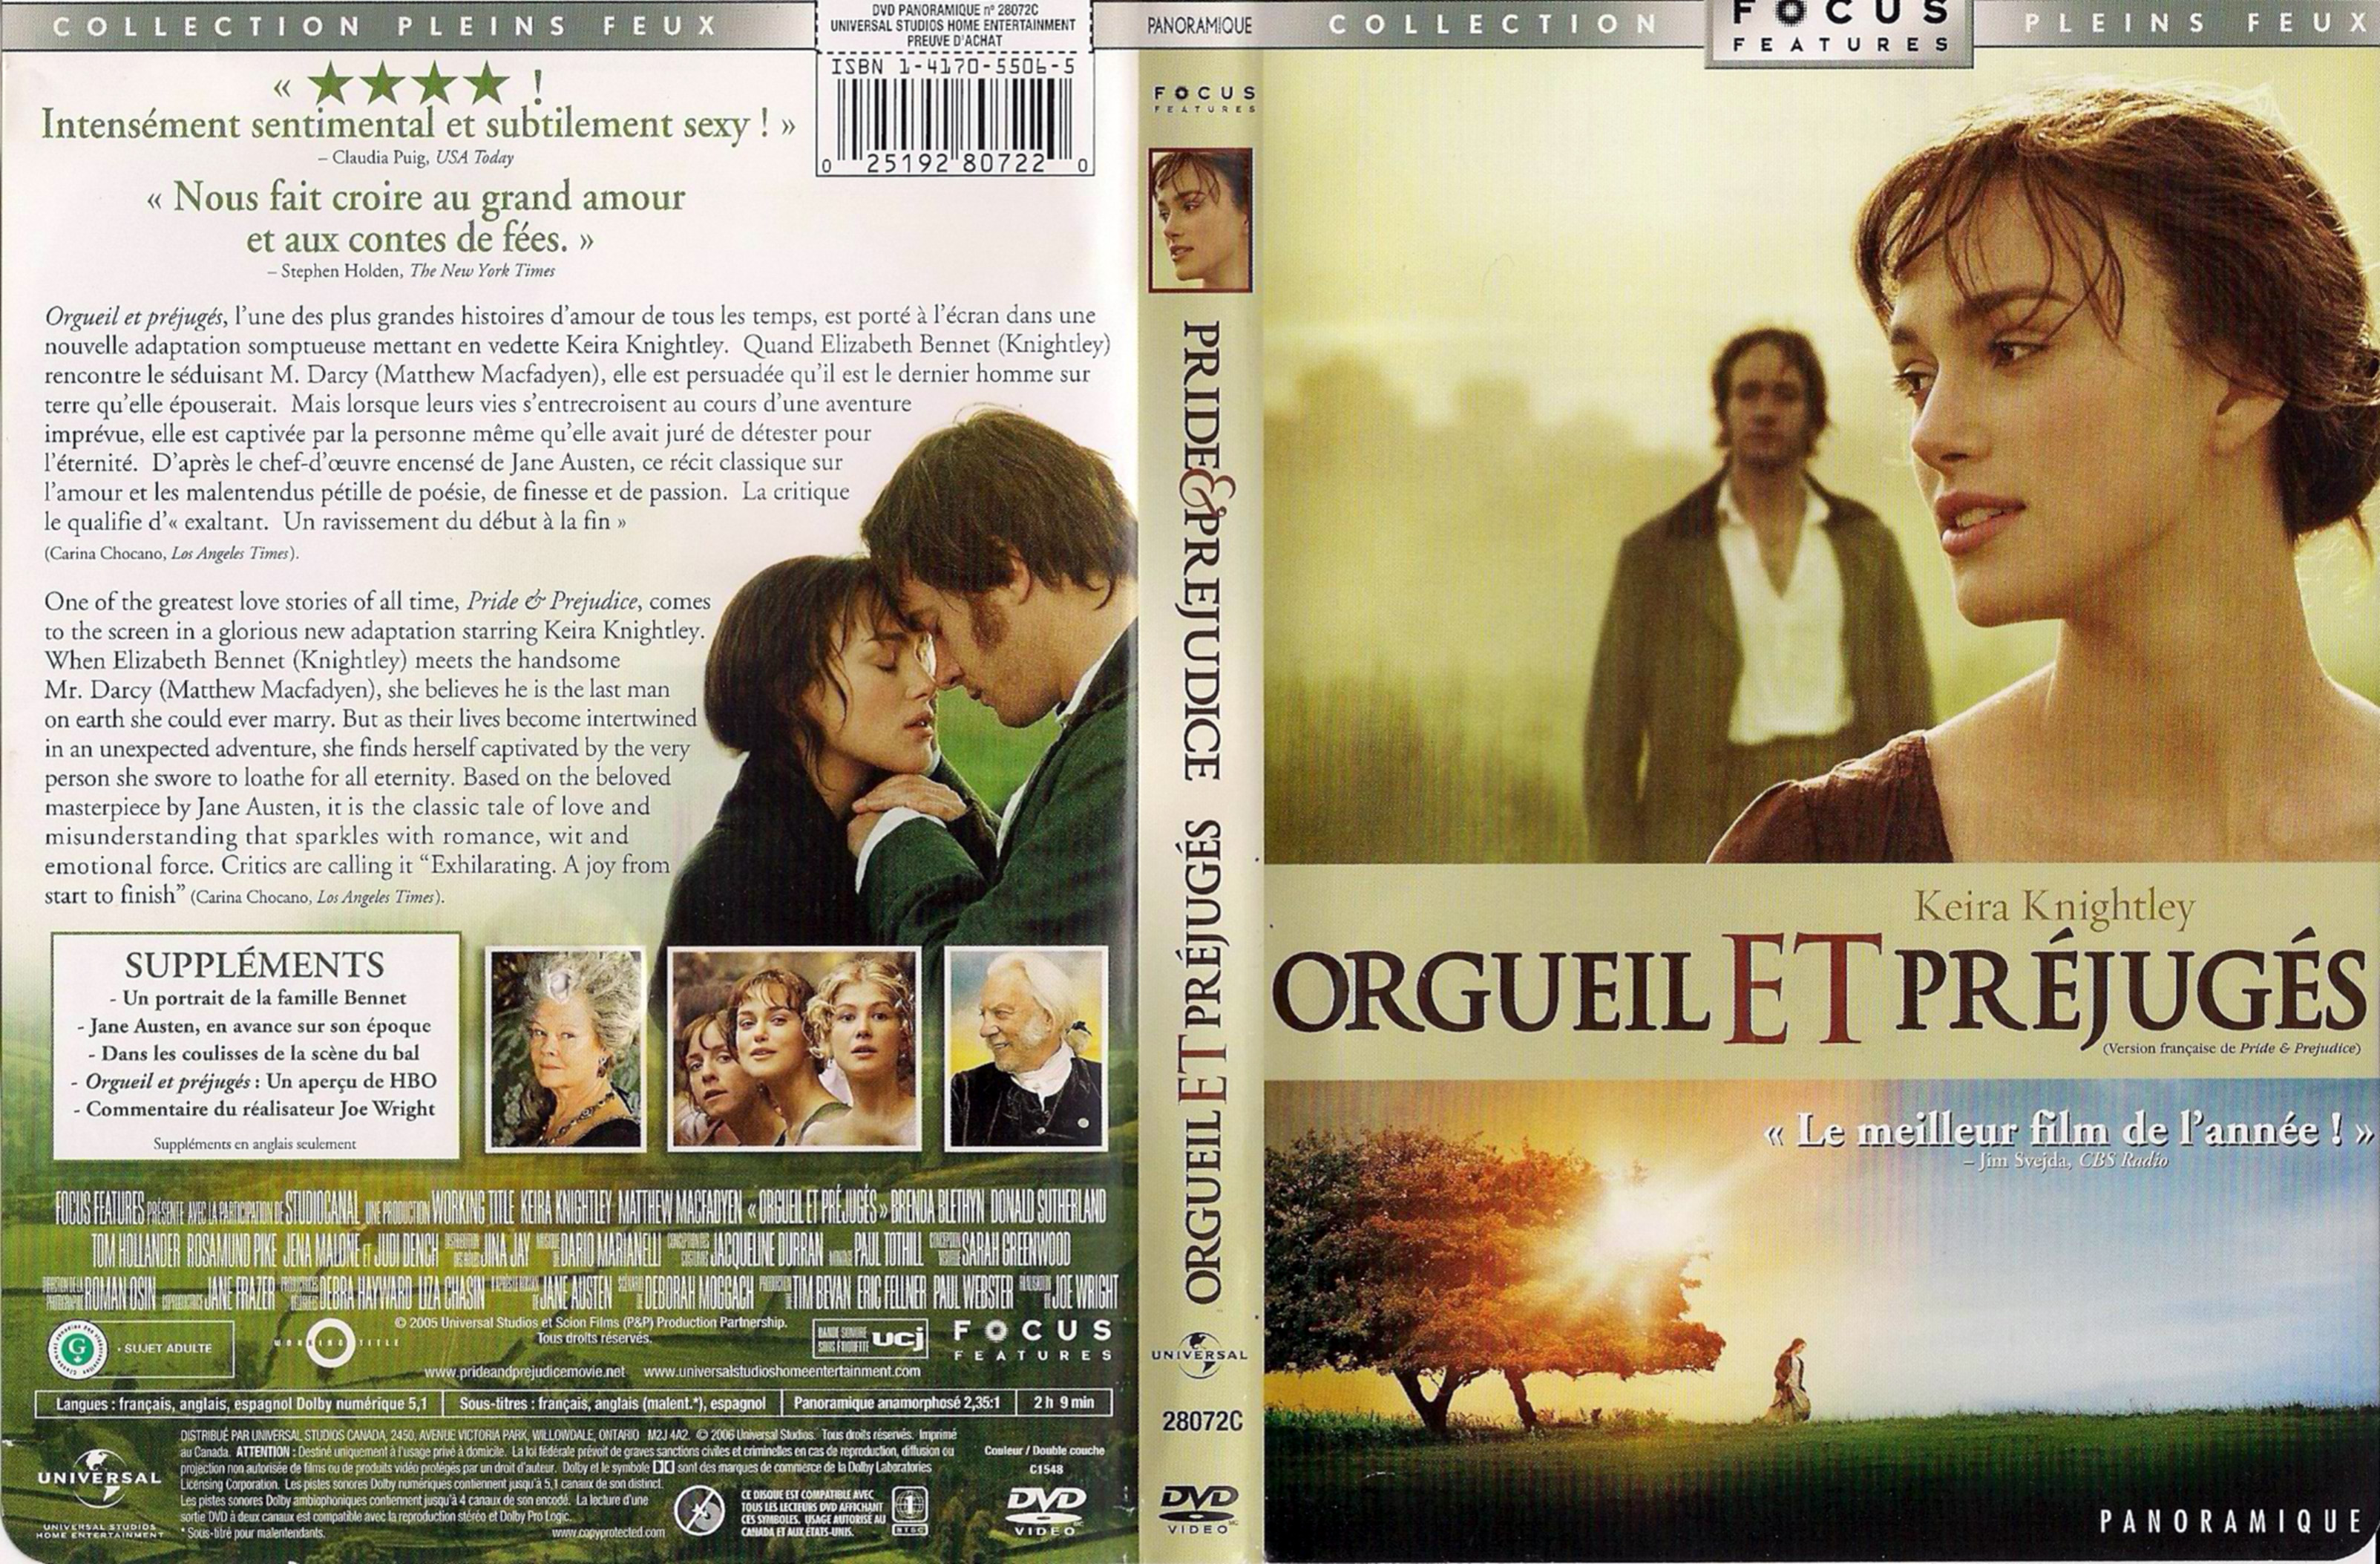 Jaquette DVD Orgueil et prjugs - Pride and prjudice (Canadienne)